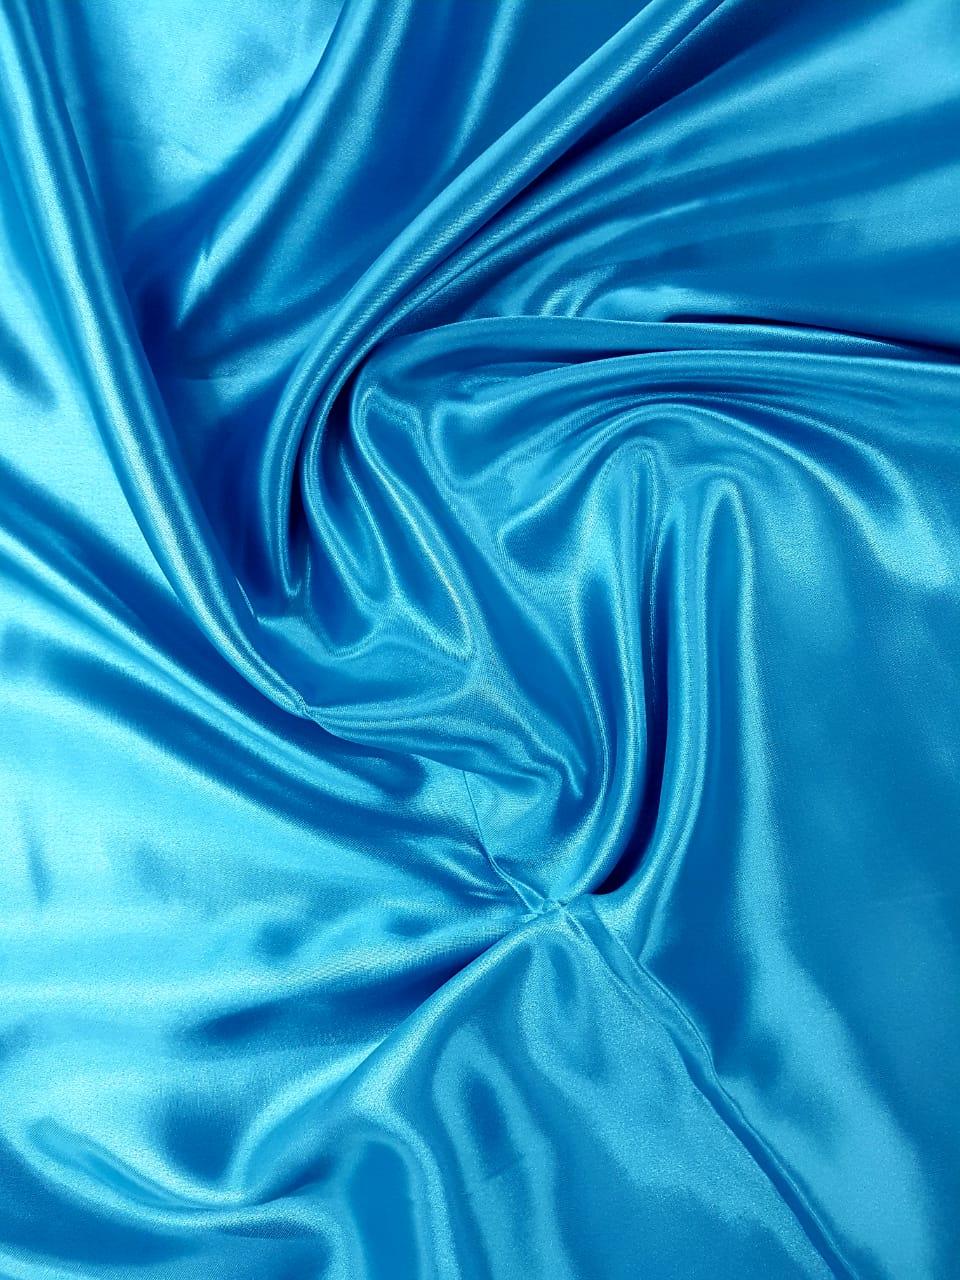 Tecido Cetim Azul Turquesa